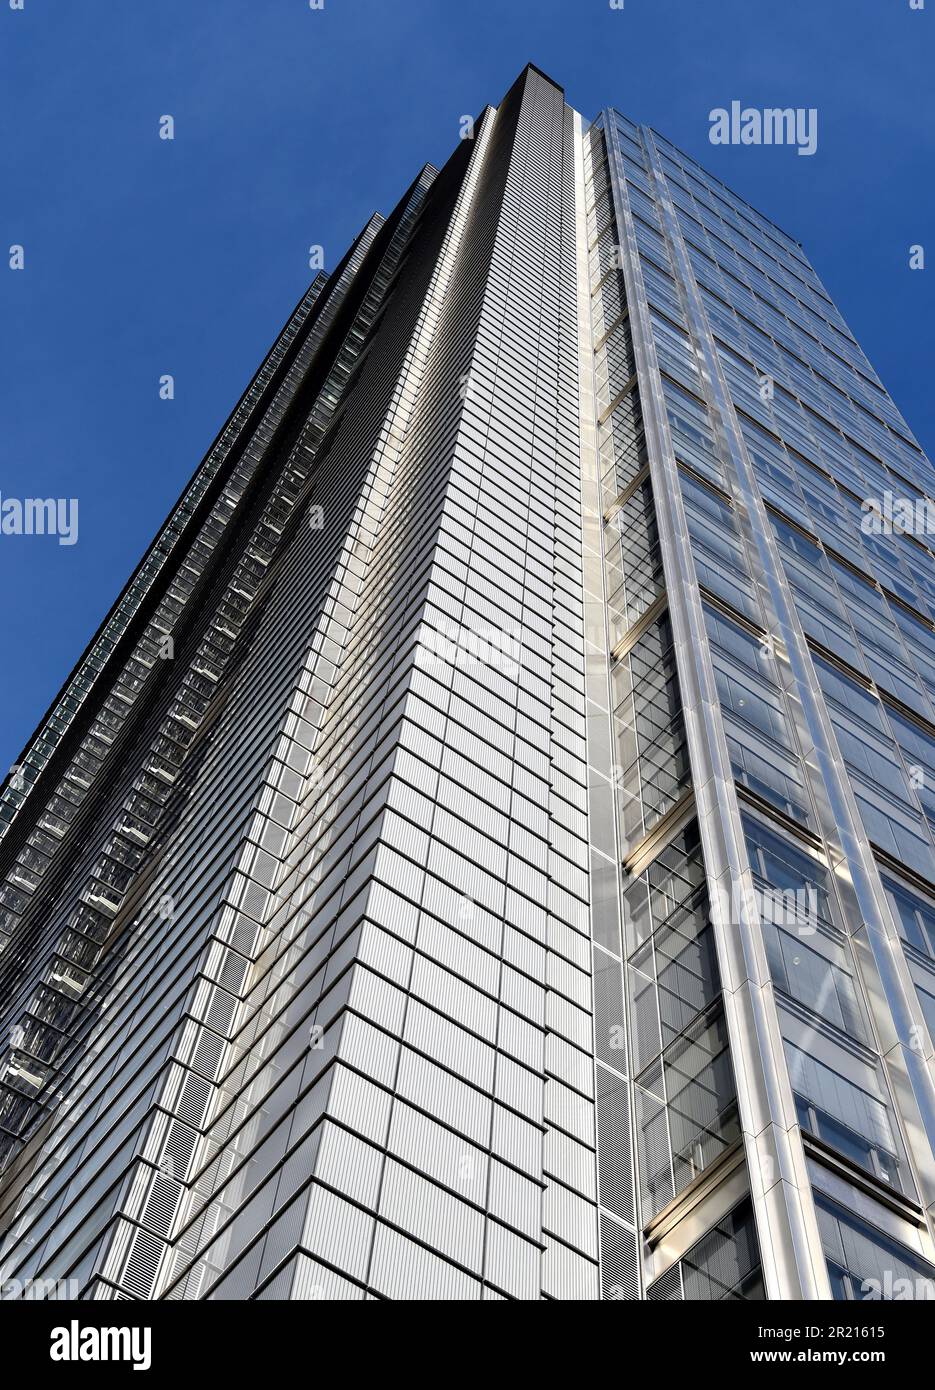 Heron Tower, ufficialmente 110 Bishopsgate, un grattacielo commerciale alto 230 metri situato nel quartiere finanziario della City of London Foto Stock